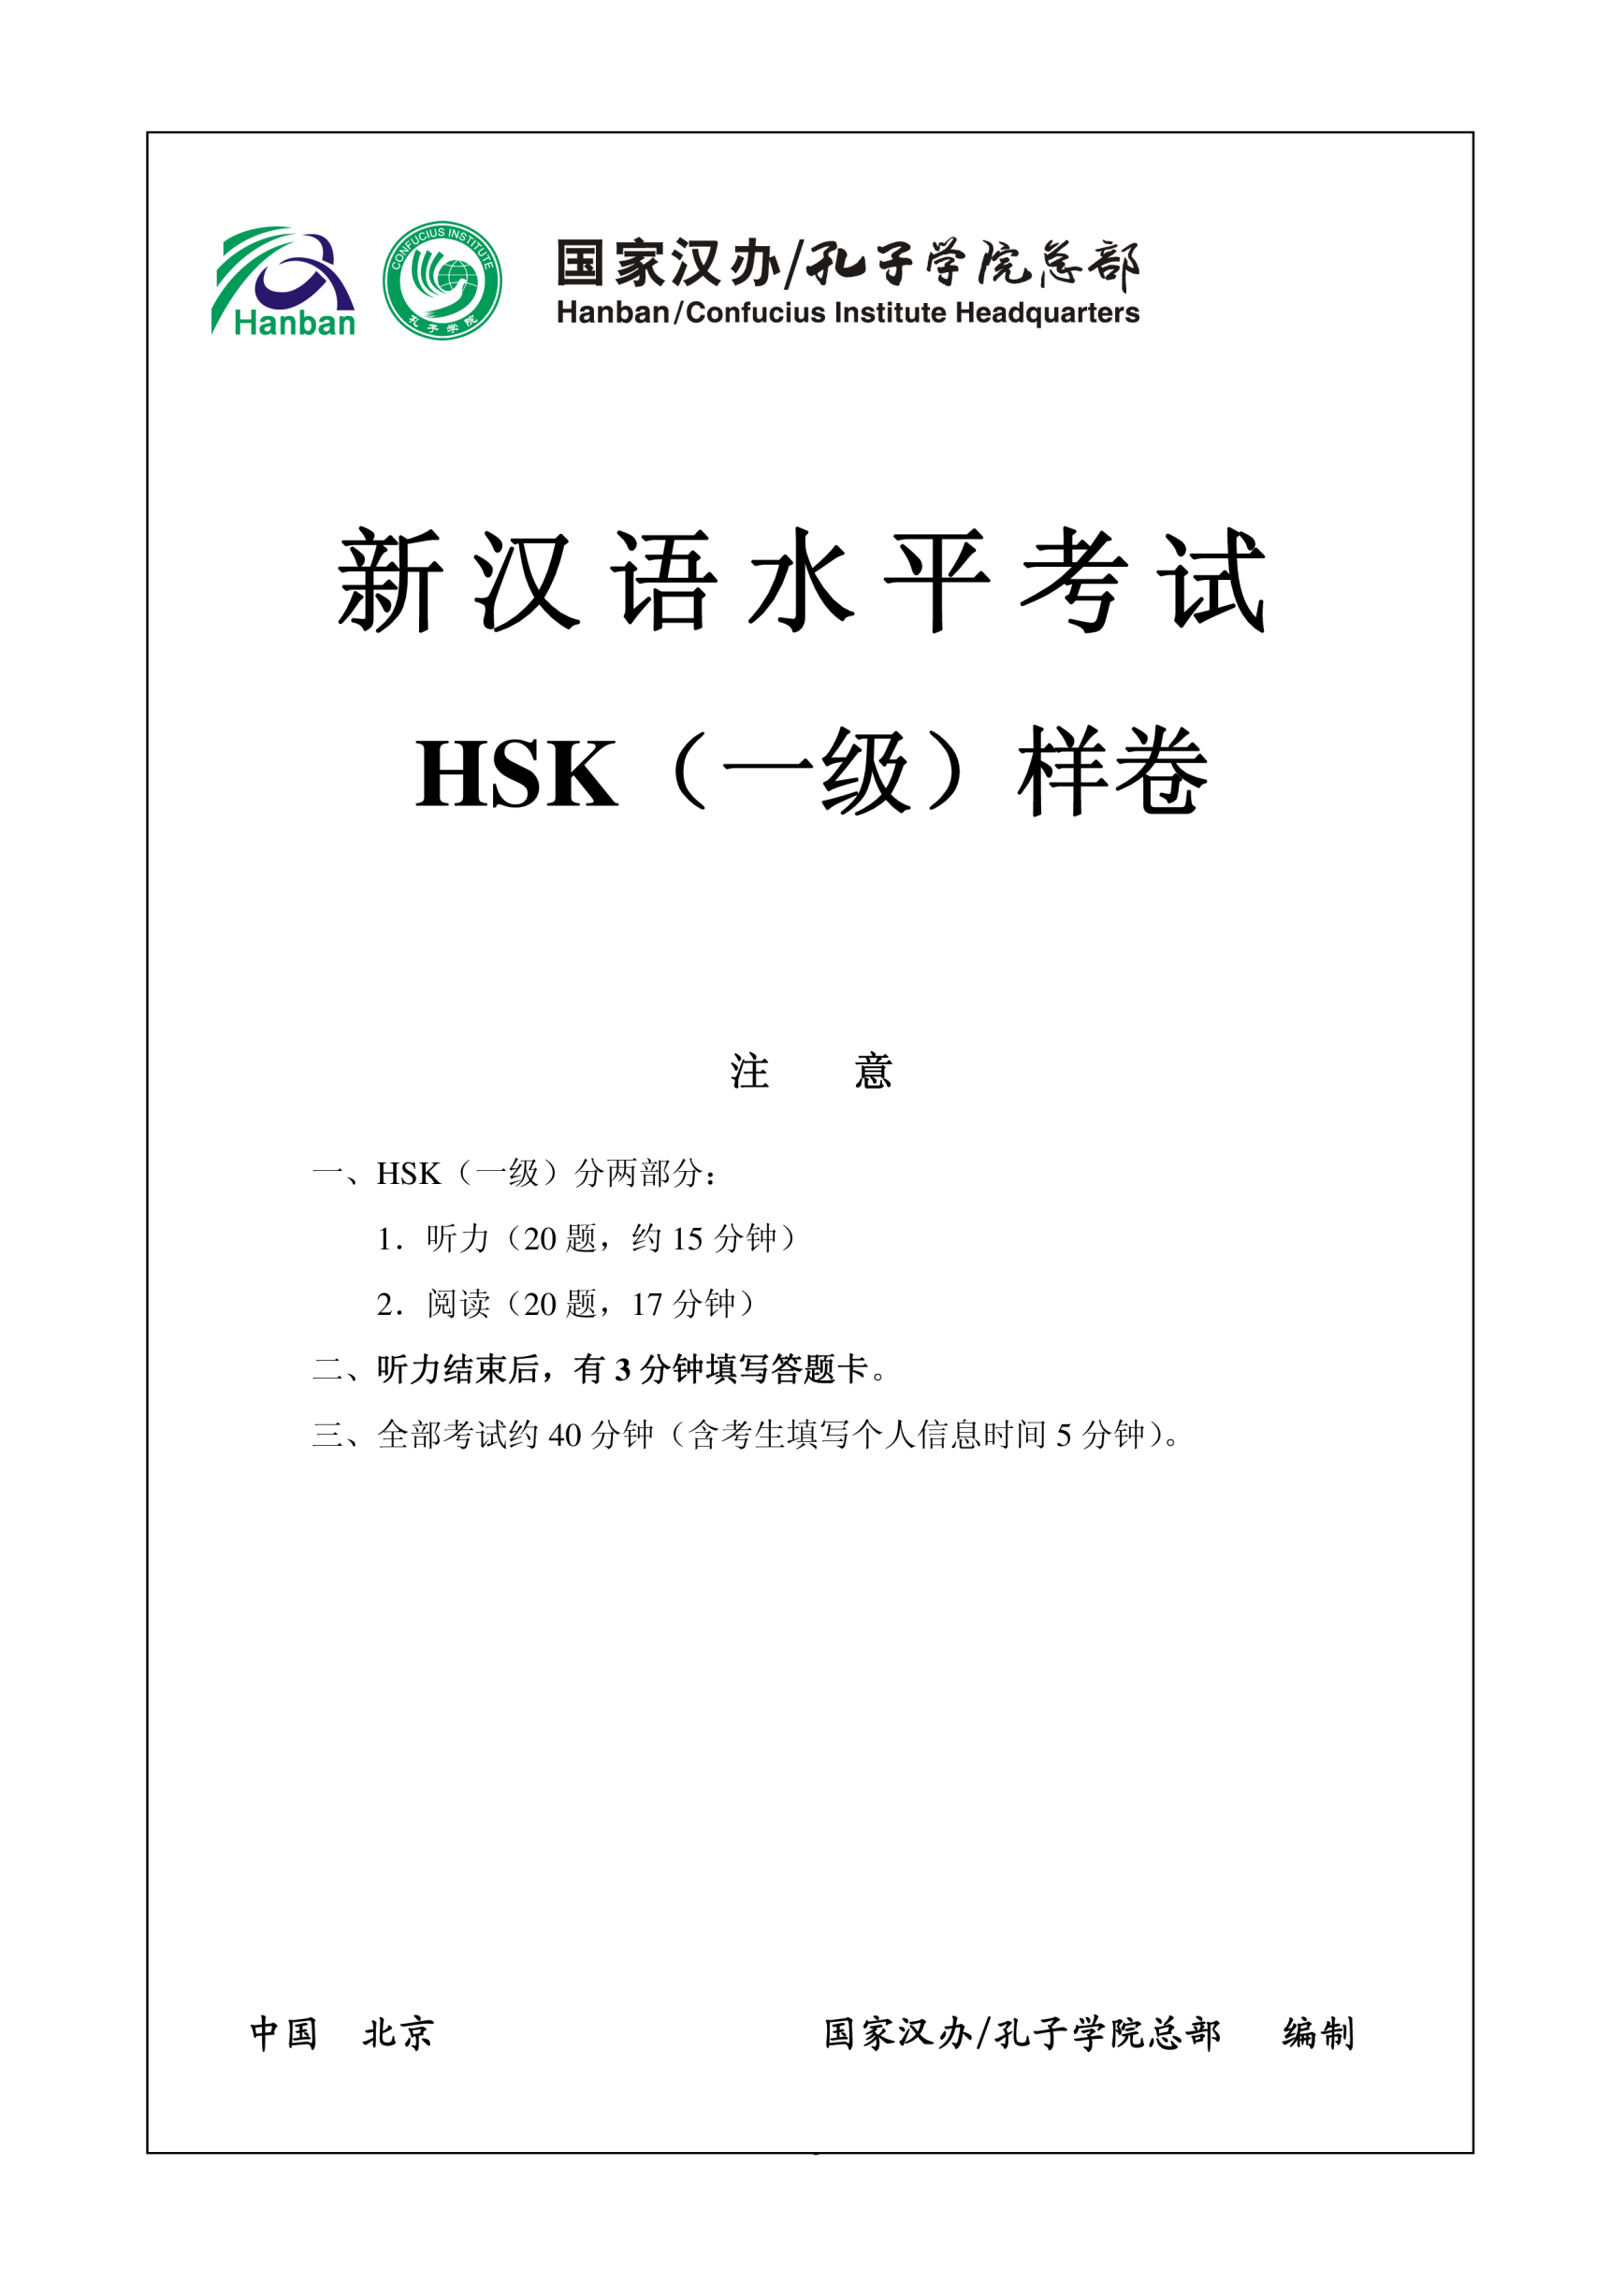 Vorschaubild der VorlageHSK1 Chinese Exam including Answers # HSK1 1-1